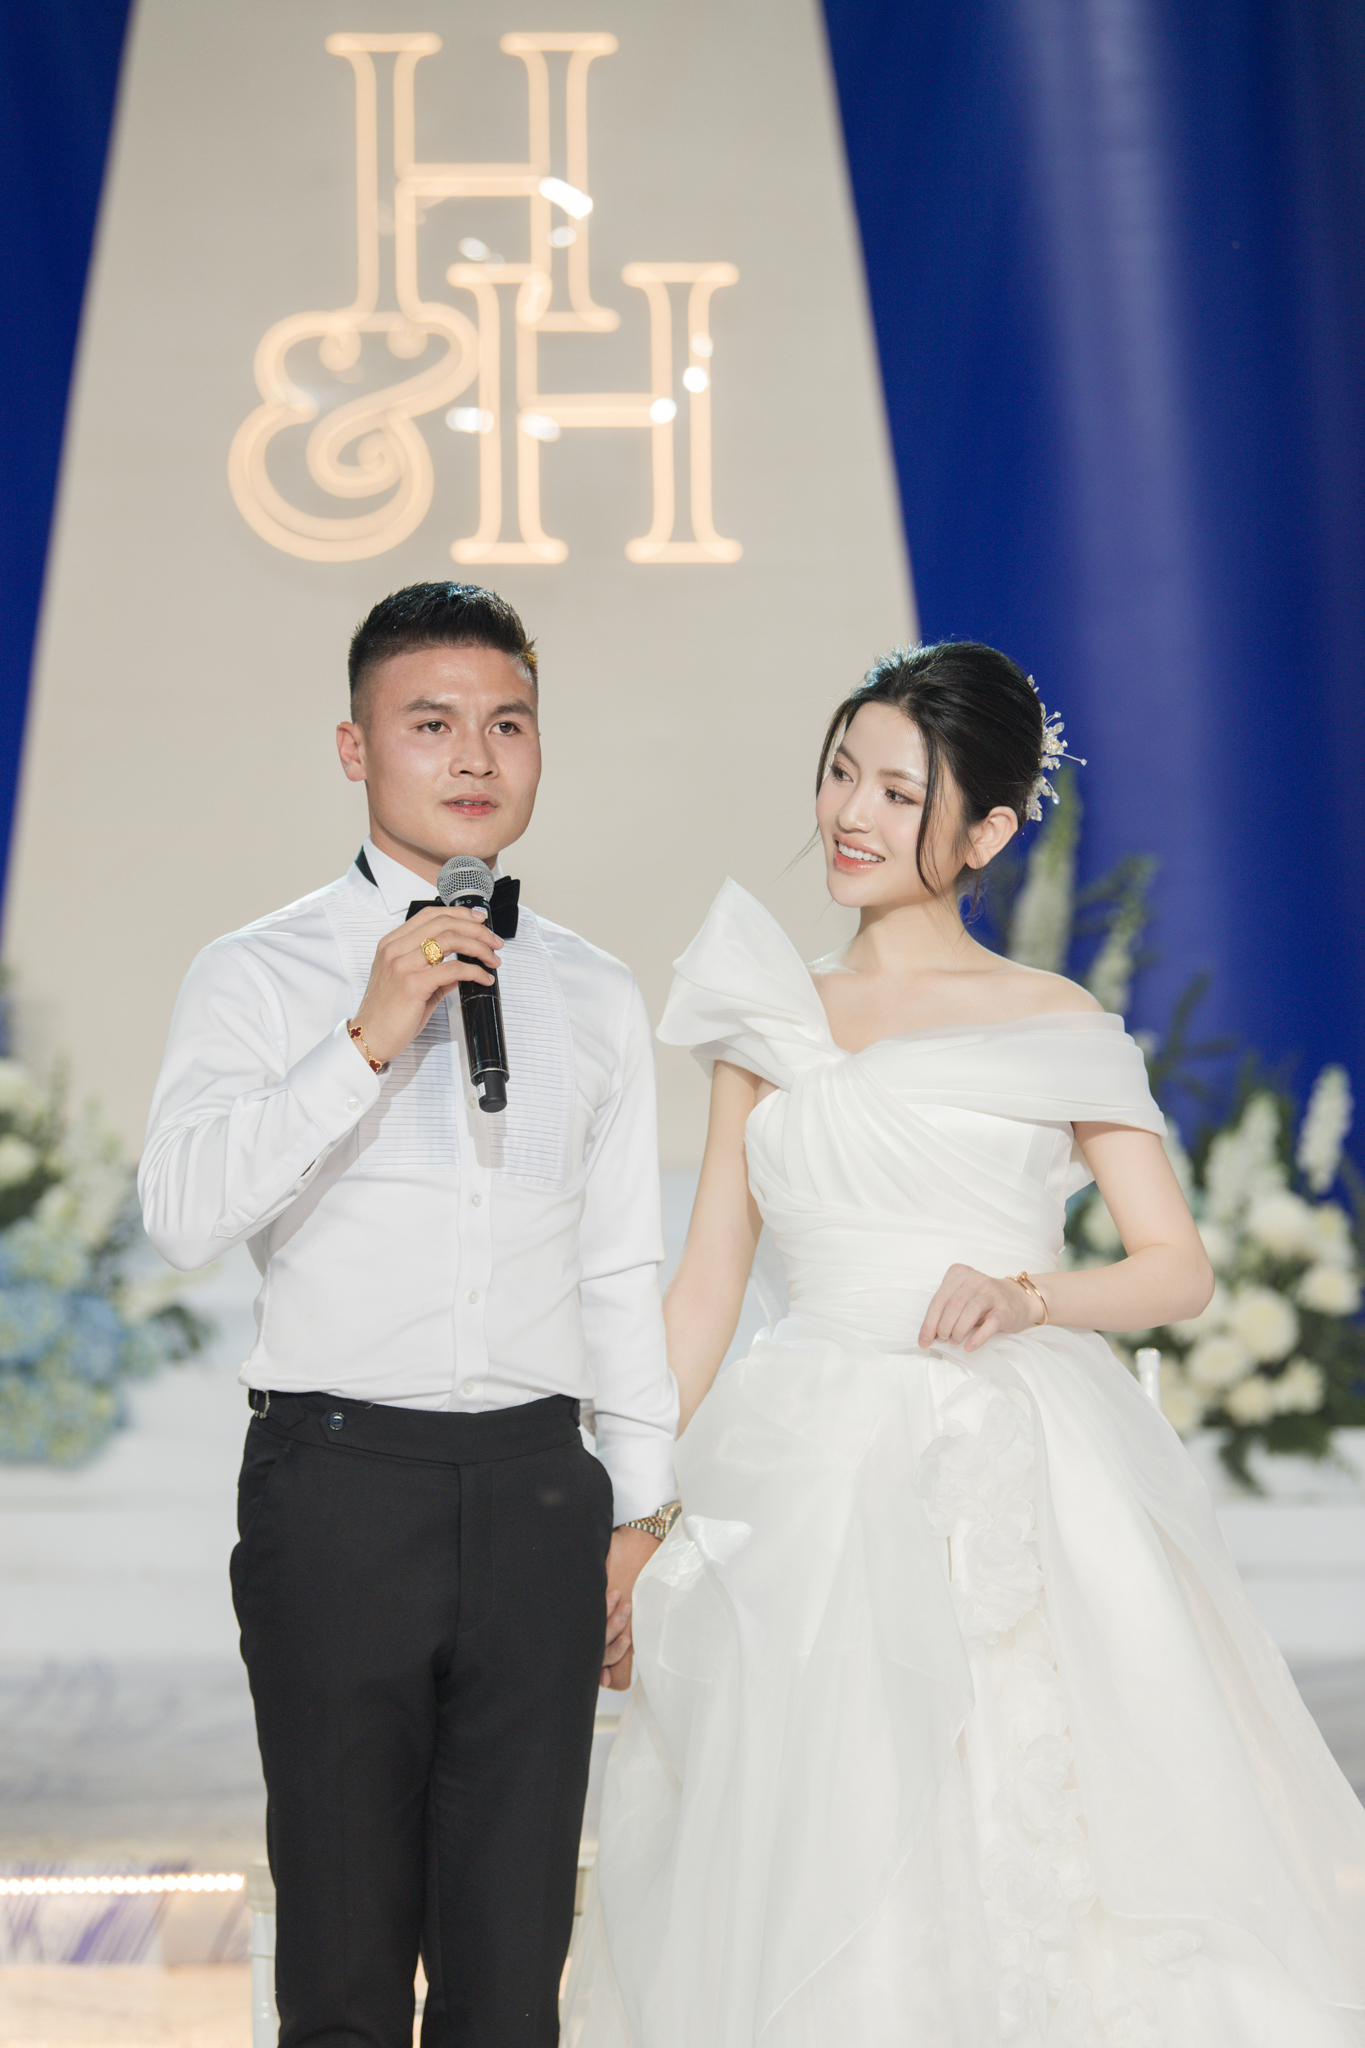 Vì sao thủ môn Bùi Tiến Dũng không dự đám cưới của Quang Hải dù có mối quan hệ thân thiết? - ảnh 1